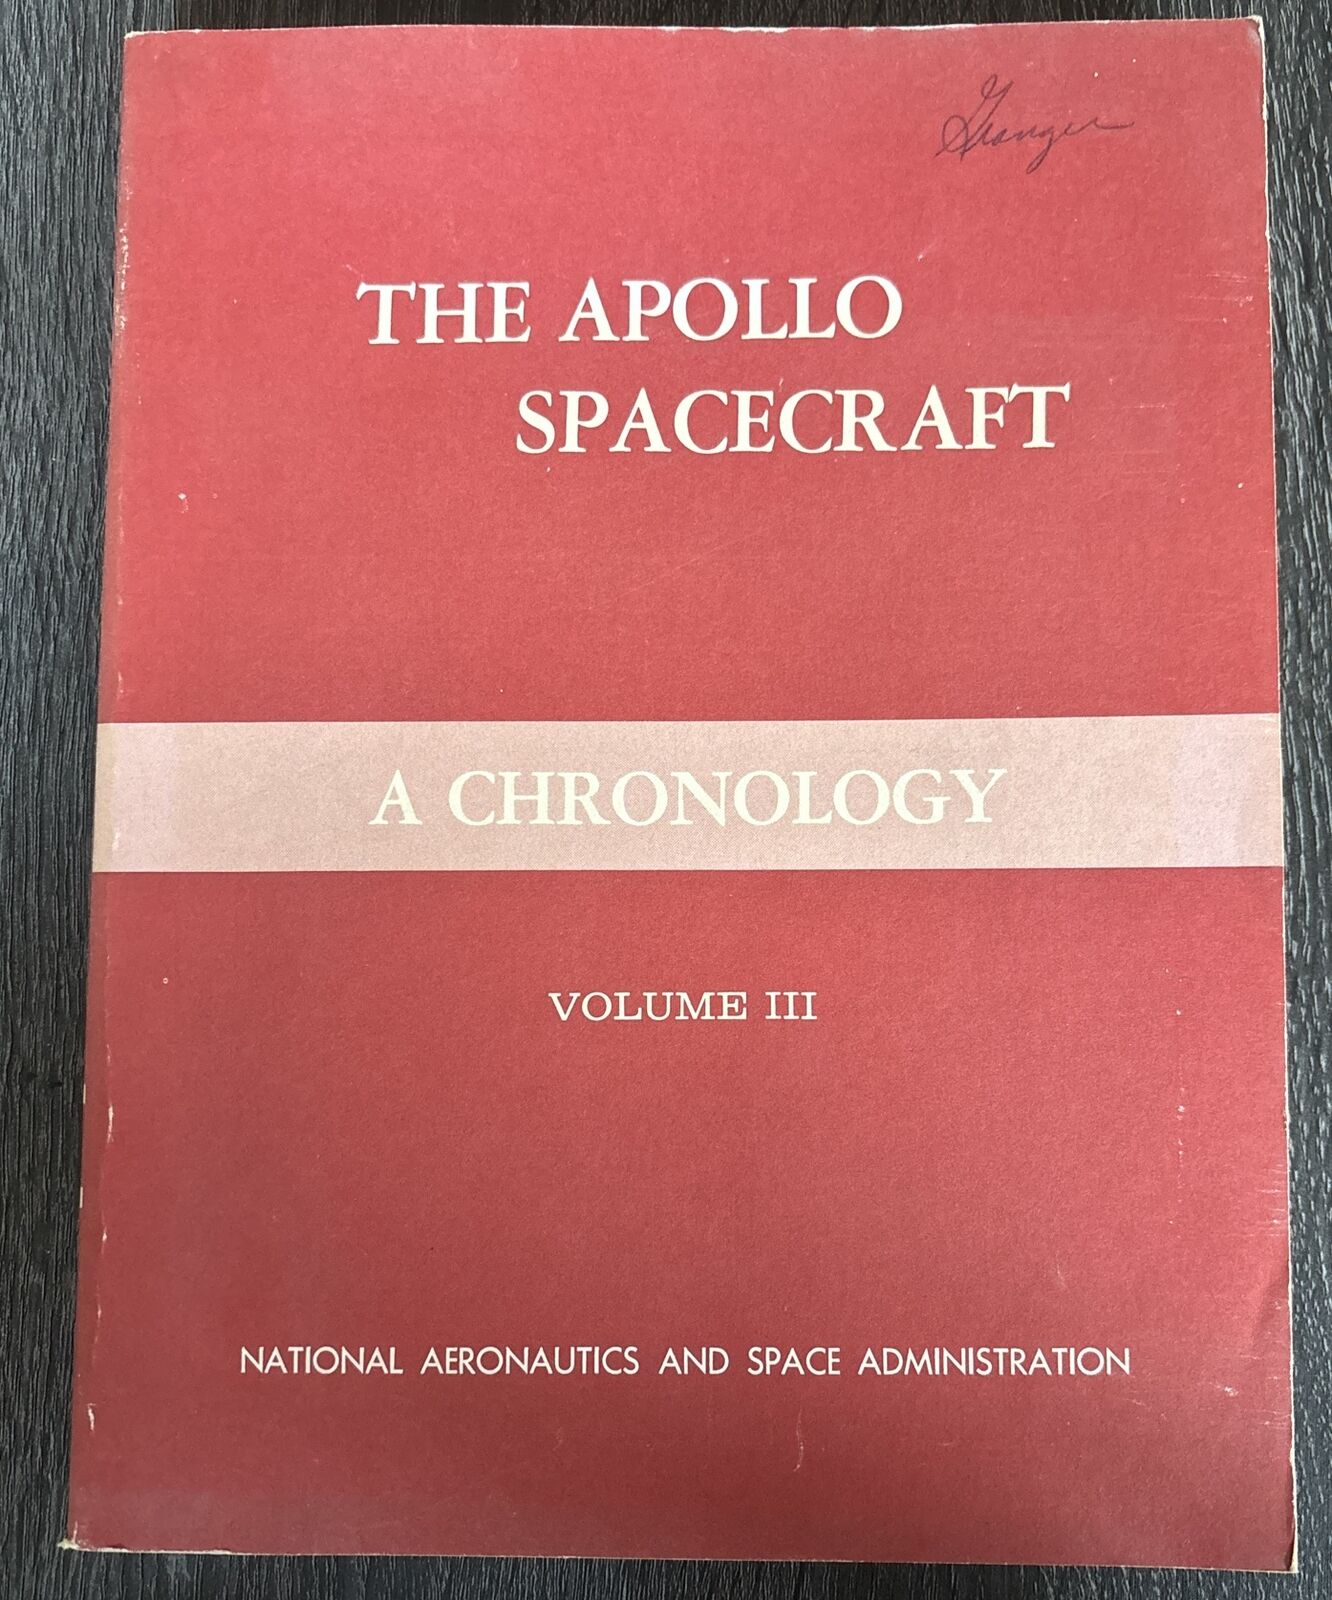 1966 The Apollo Spacecraft A Chronology Vol. 4 NASA SP-4009 Softcover Vol III